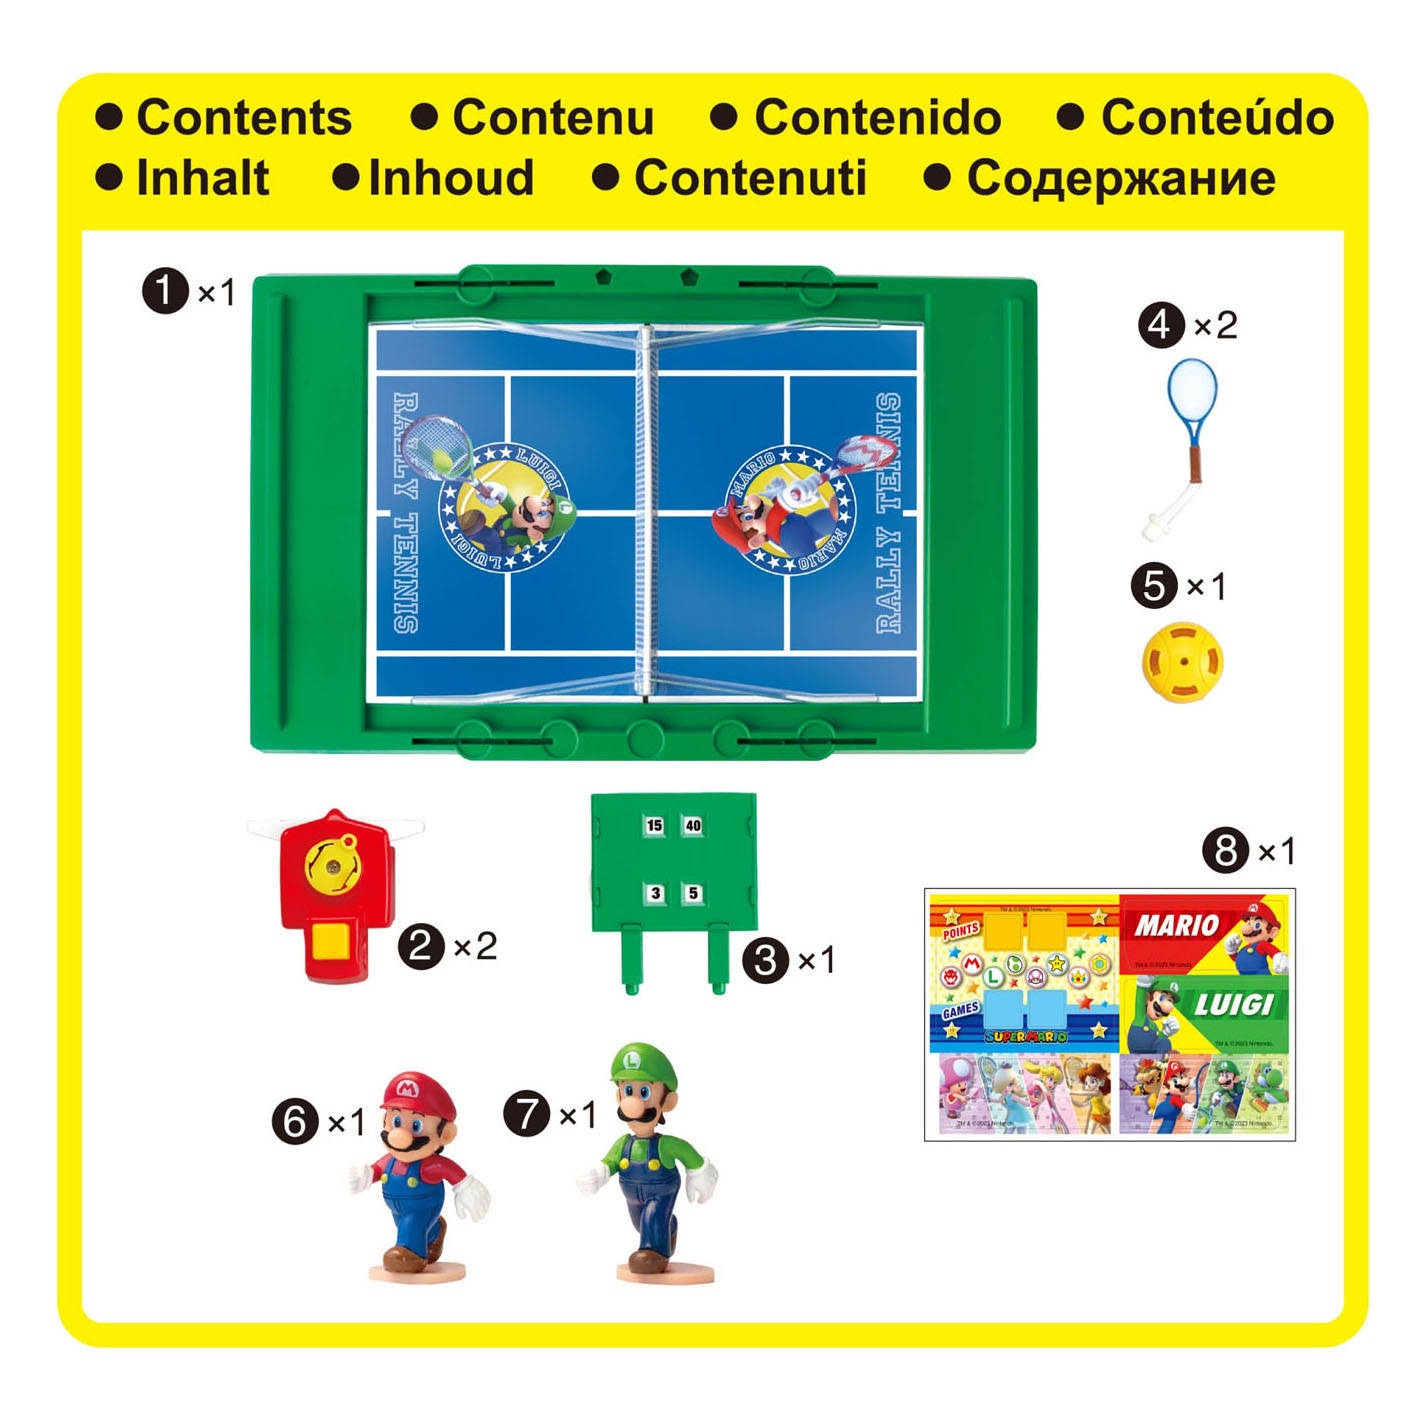 Super Mario Tennis spel